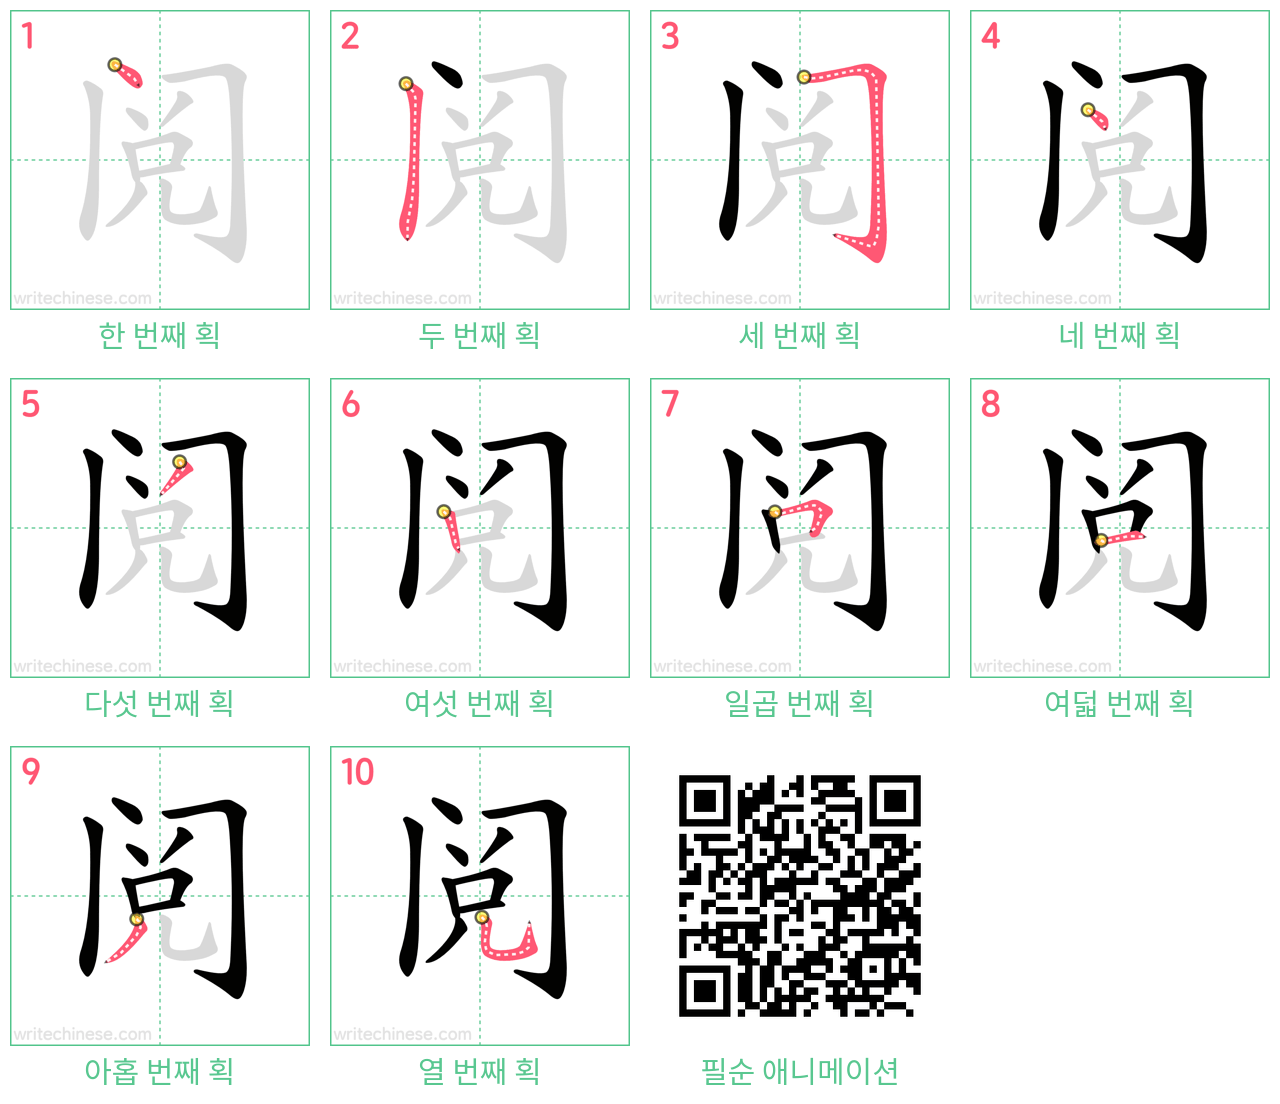 阅 step-by-step stroke order diagrams